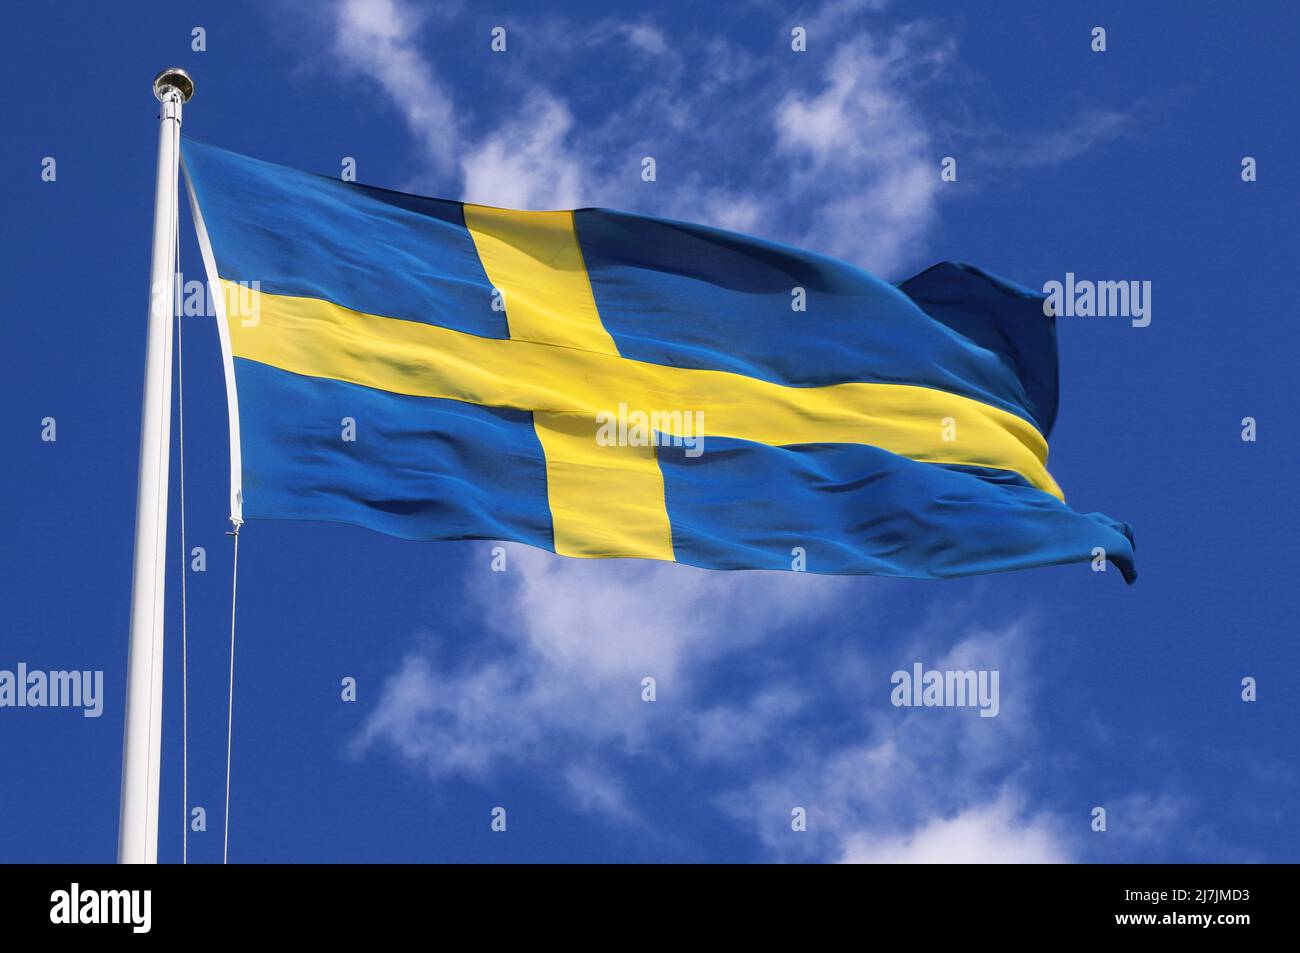 Vue rapprochée en petit angle d'un drapeau national suédois hissé volant dans le vent contre un ciel bleu avec des nuages clairs. Banque D'Images